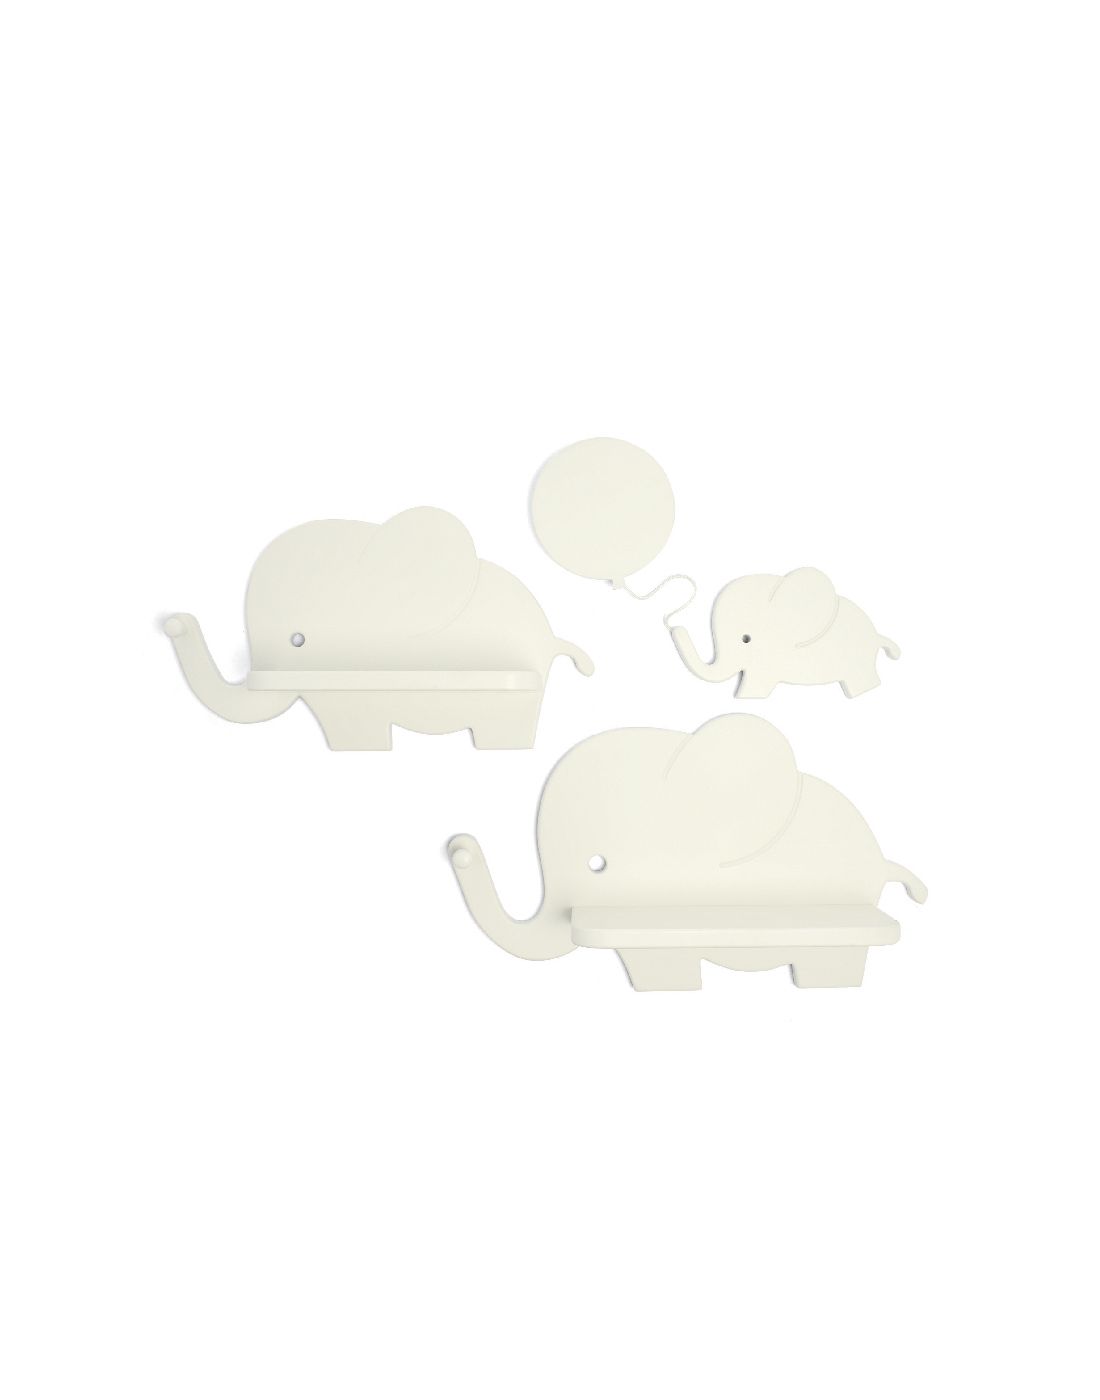 Παιδικά Ράφια και Φωτάκι Νυχτός Mamas & Papas Elephant